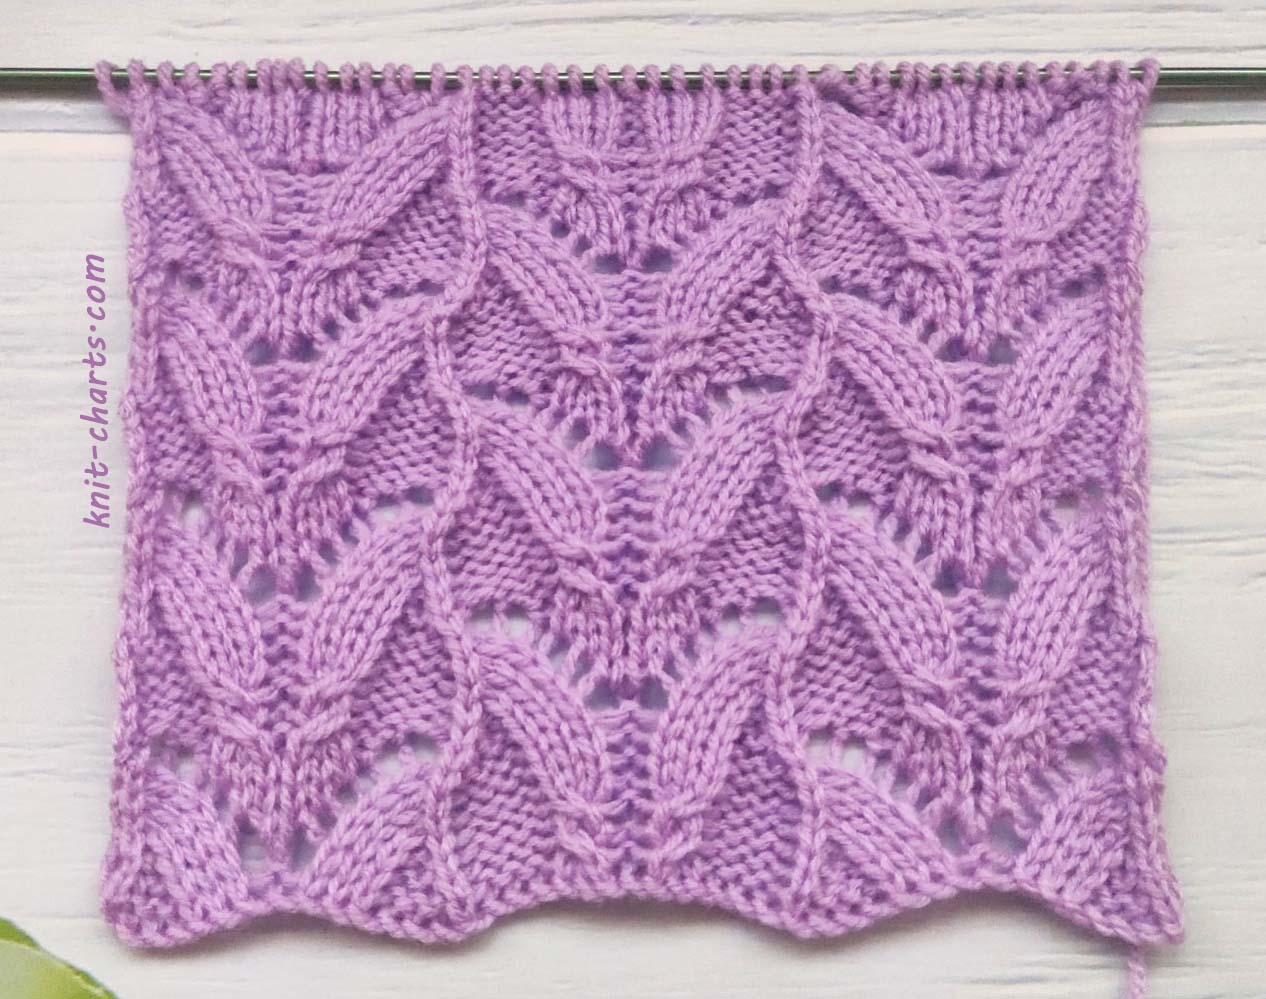 Free Knitting Patterns - Fancy Stitch Knitting Pattern